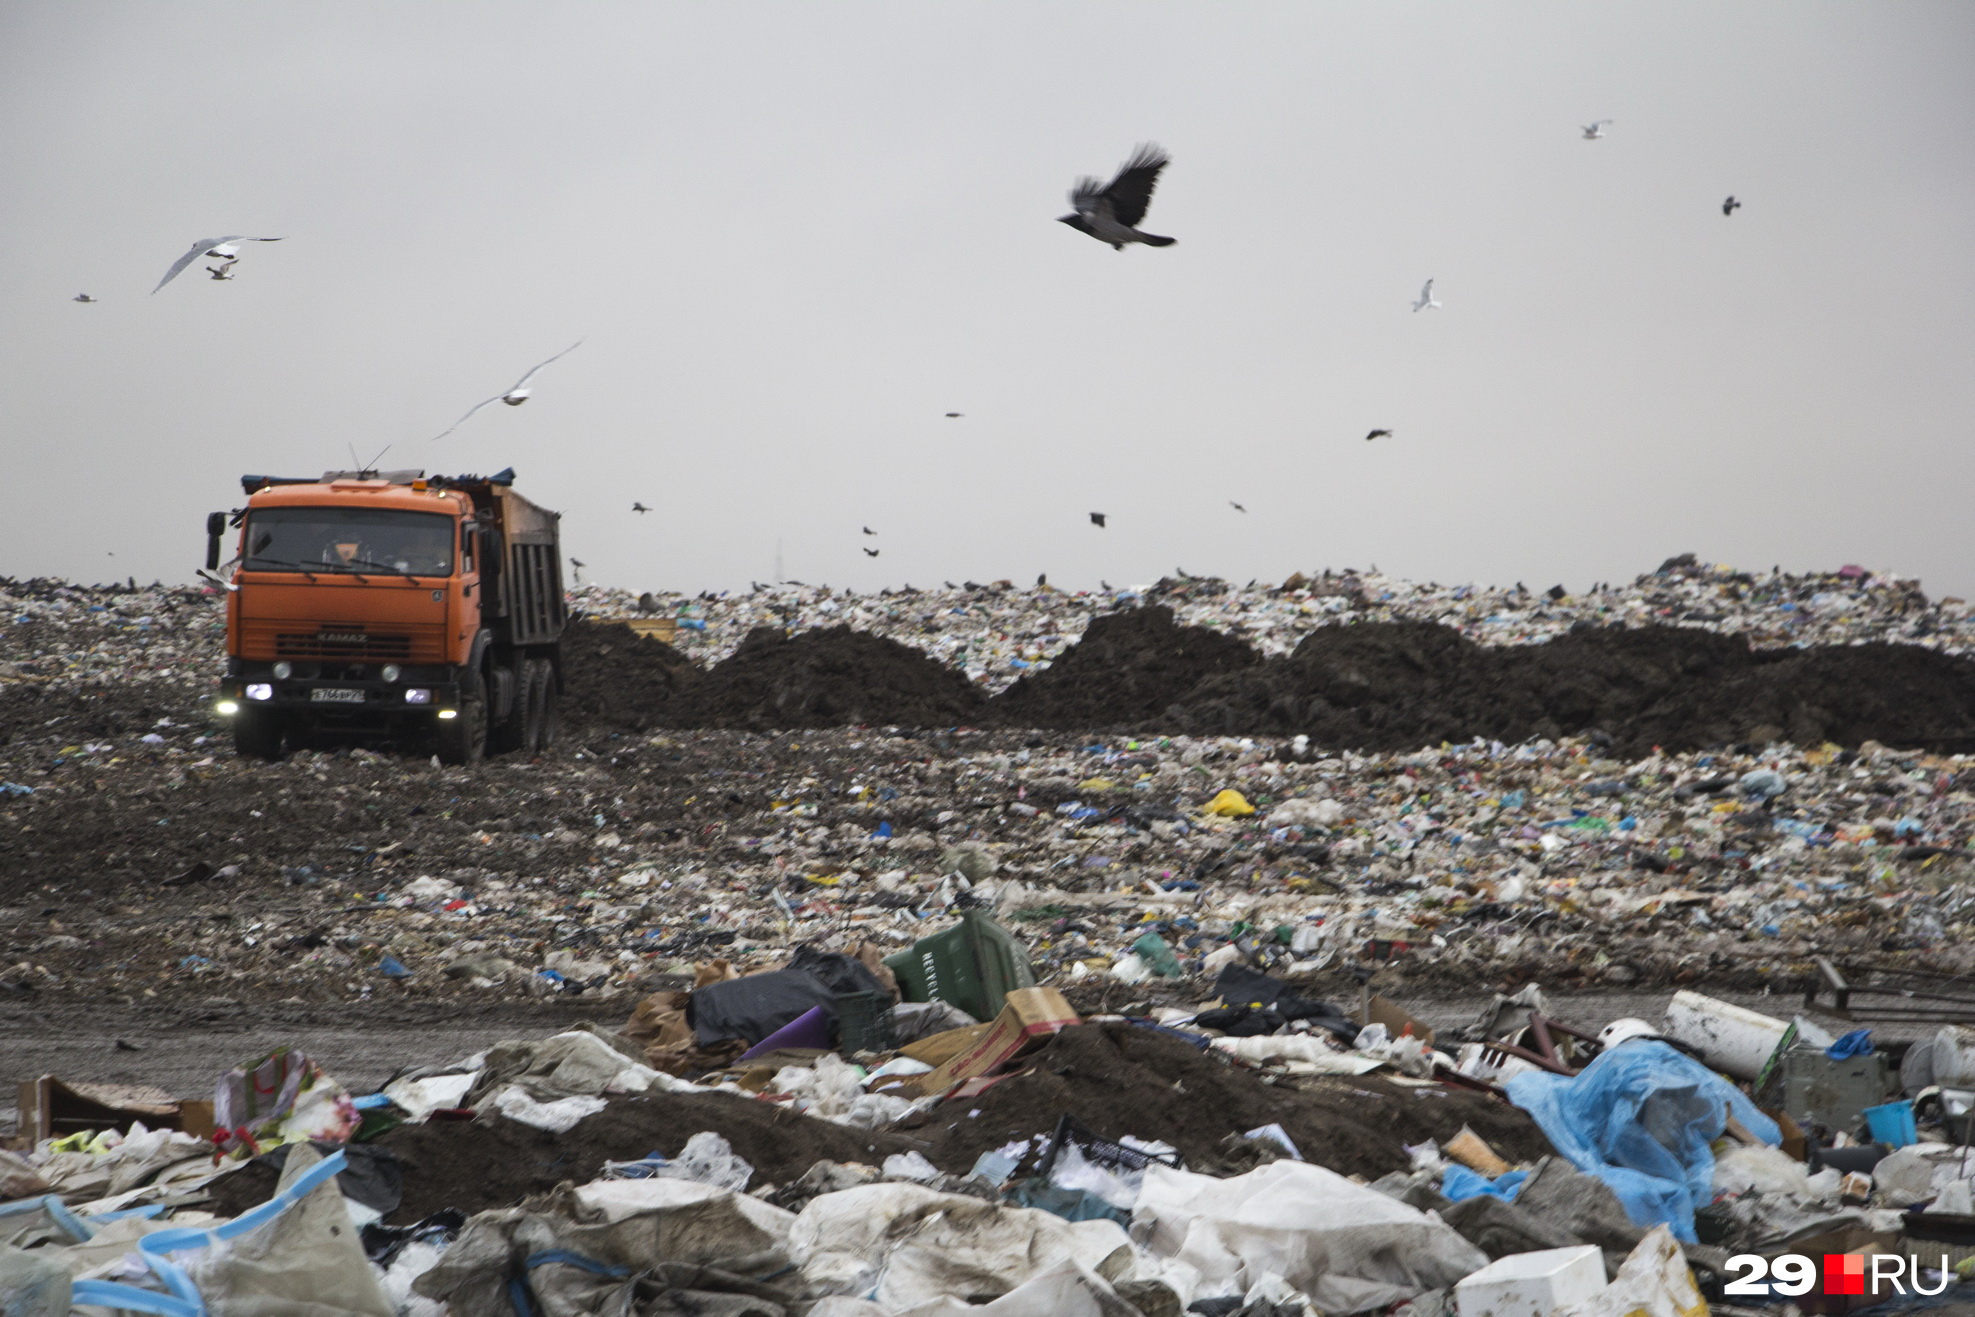 Москвичи каждый год выбрасывают почти 8 миллионов тонн бытового мусора и еще 2,4 миллиона тонн крупногабаритных отходов (старая мебель, бытовая техника, мусор после ремонта квартир)